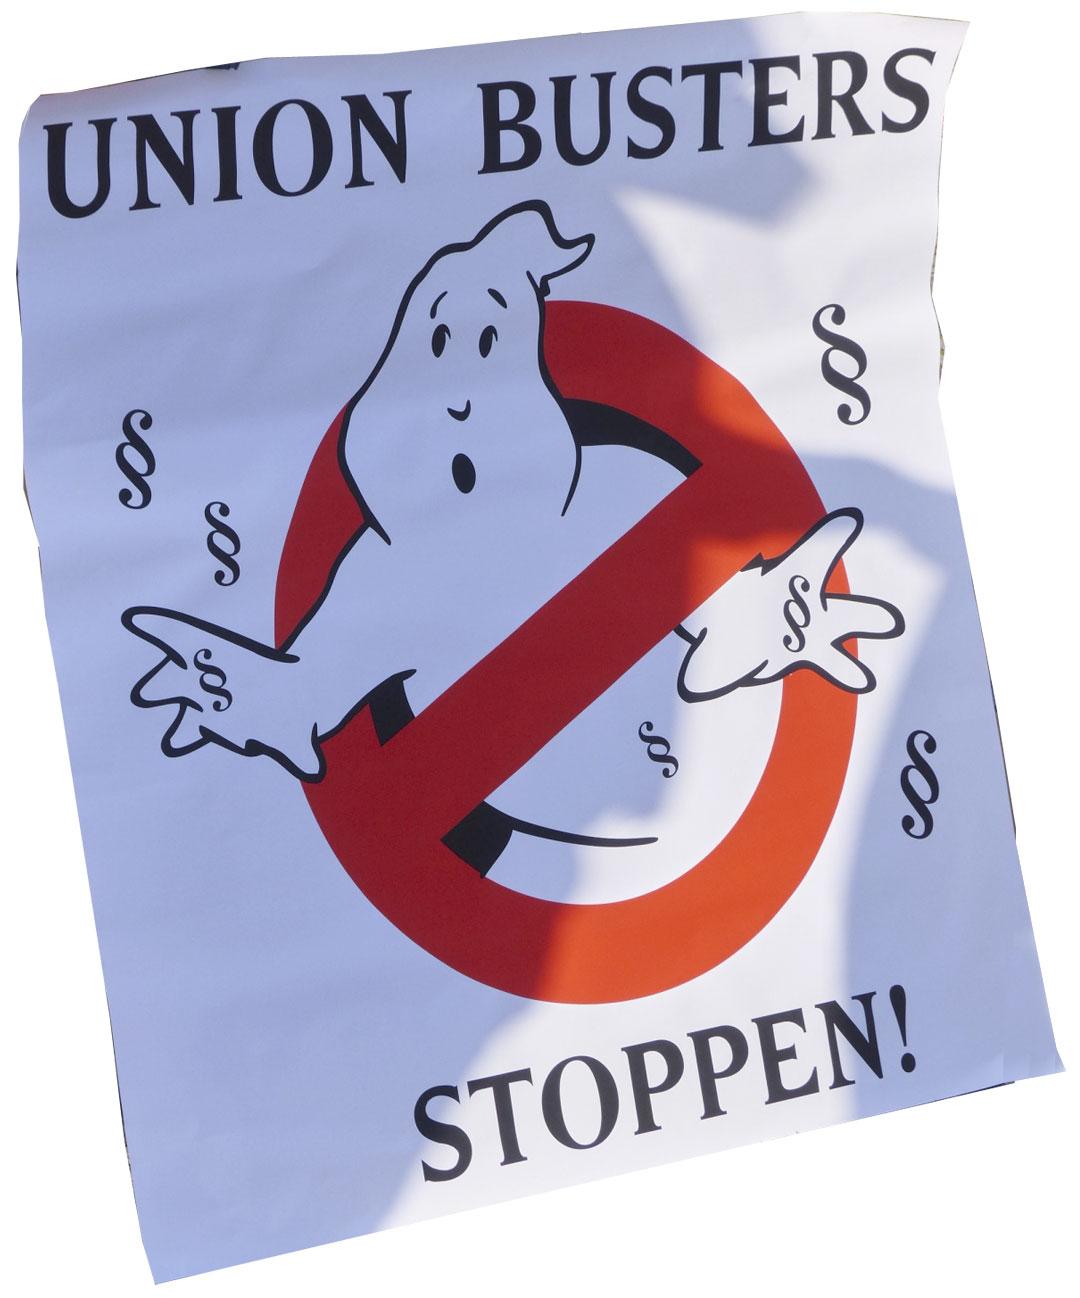 420202 Keller - Union Buster entlarven - Aktion gegen Arbeitsunrecht, Elmar Wiegand, Union Busting - Wirtschaft & Soziales